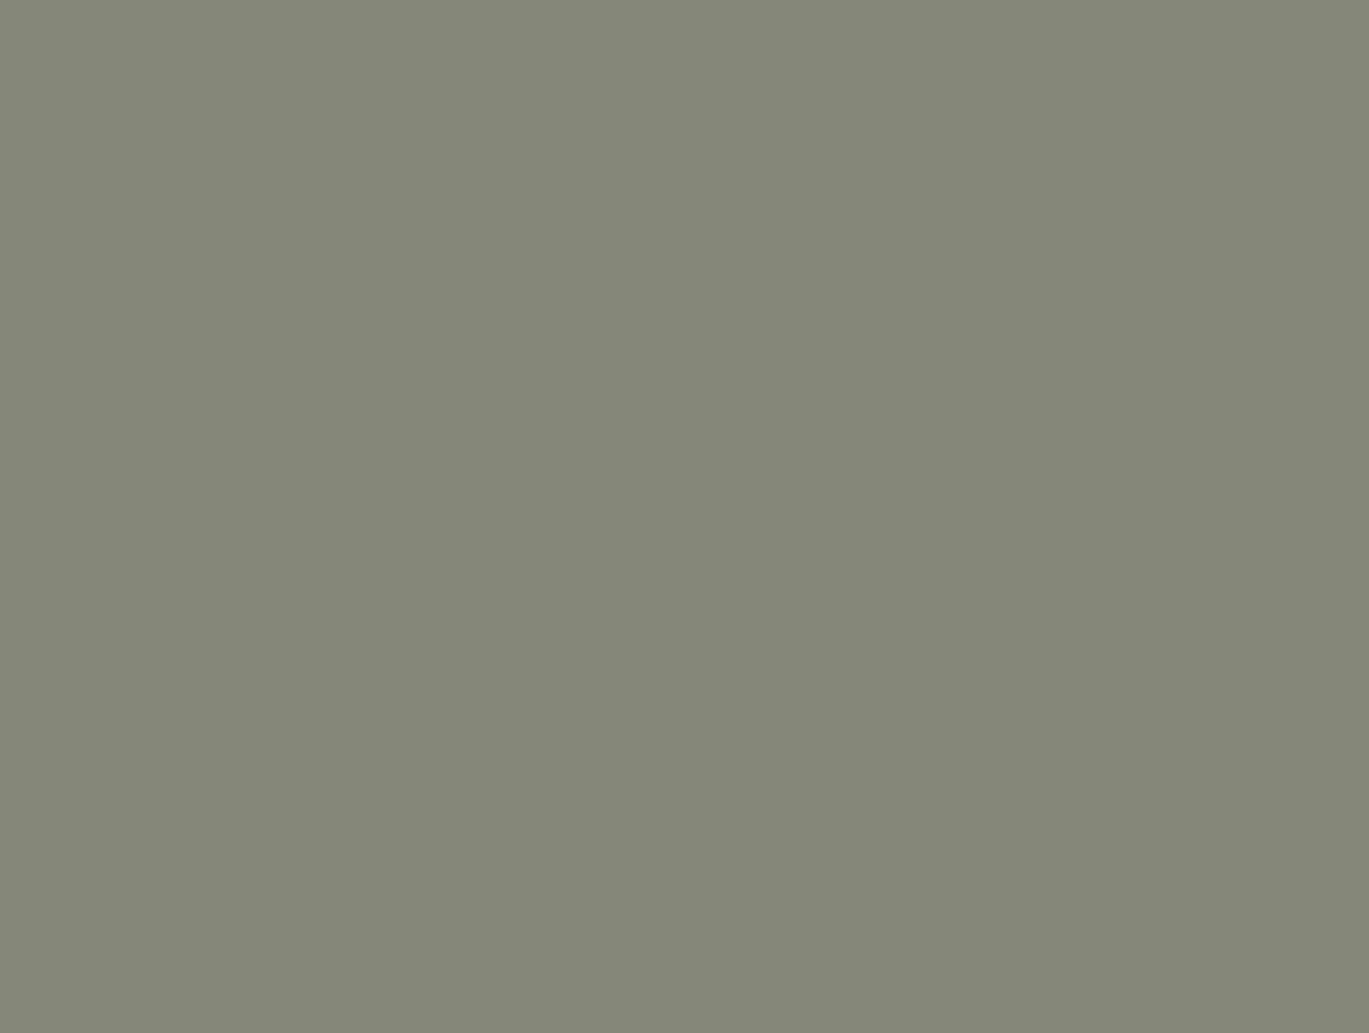 Джованни Паоло Панини. Фонтан Треви. XVIII в. Музей изящных искусств, Бостон. — Палаццо Поли в Риме, где поселилась княгиня